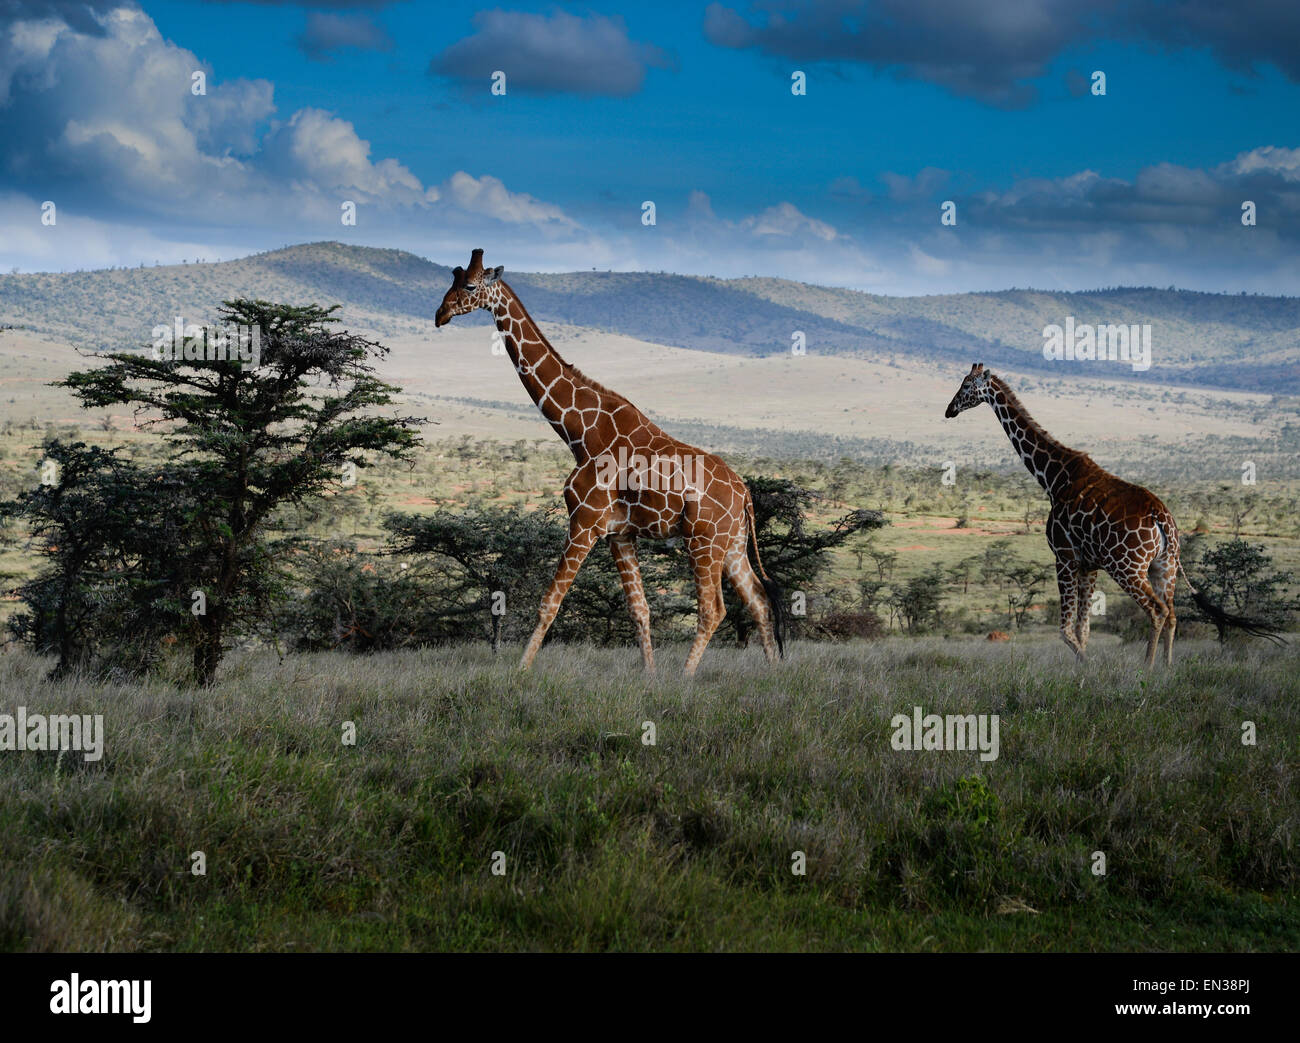 La Jirafa reticulada, también conocida como la jirafa somalí, es nativo de Somalia, el sur de Etiopía y en el norte de Kenya. Foto de stock